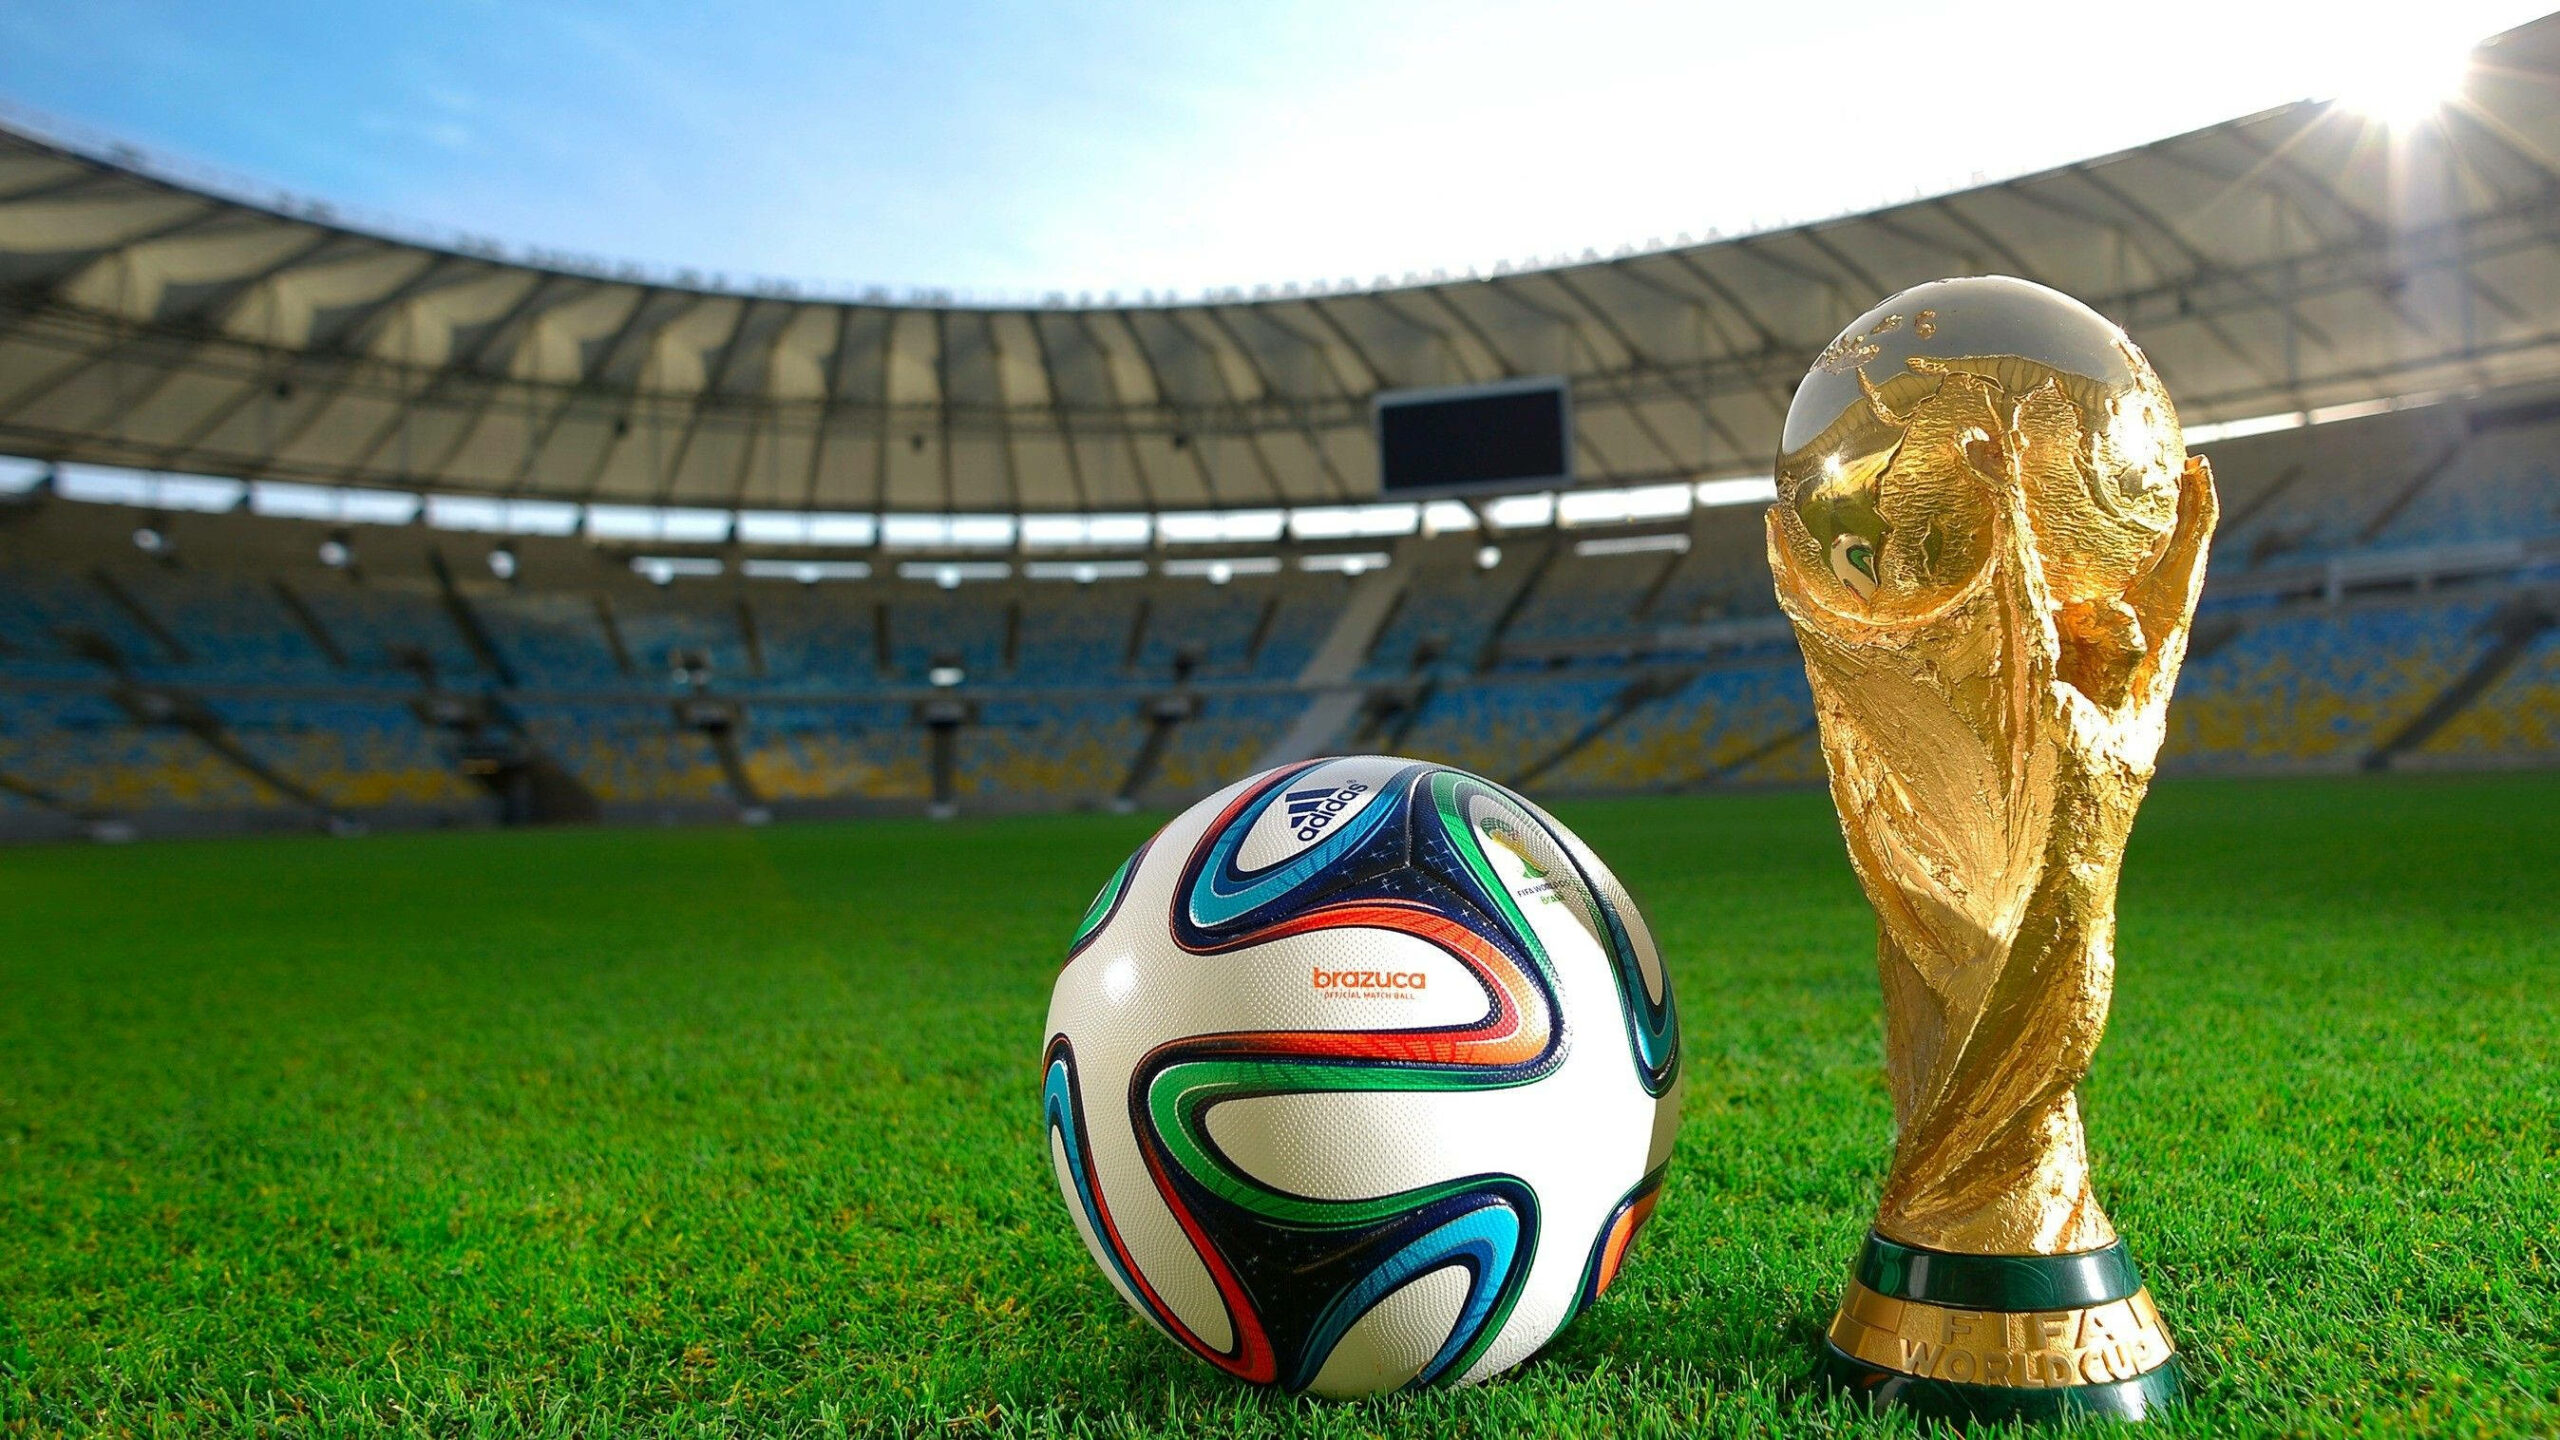 بالأرقام.. الجوائز المالية لمنتخبات كأس العالم 2022
